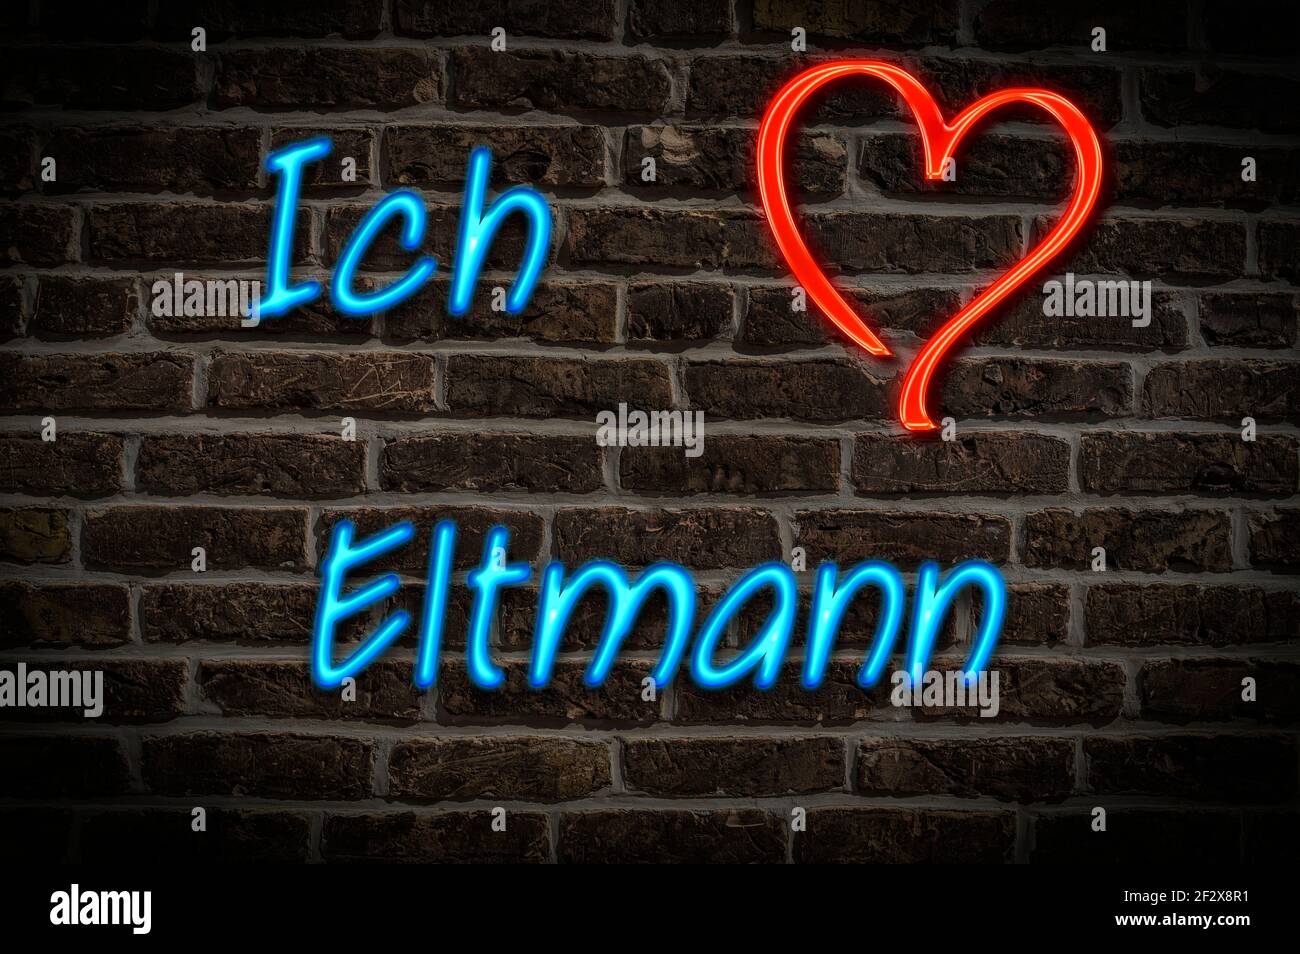 Leuchtreklame, Ich liebe Eltmann, Bayern, Deutschland, Europa | Publicidad iluminada, Me encanta Eltmann, Baviera, Alemania, Europa Foto de stock